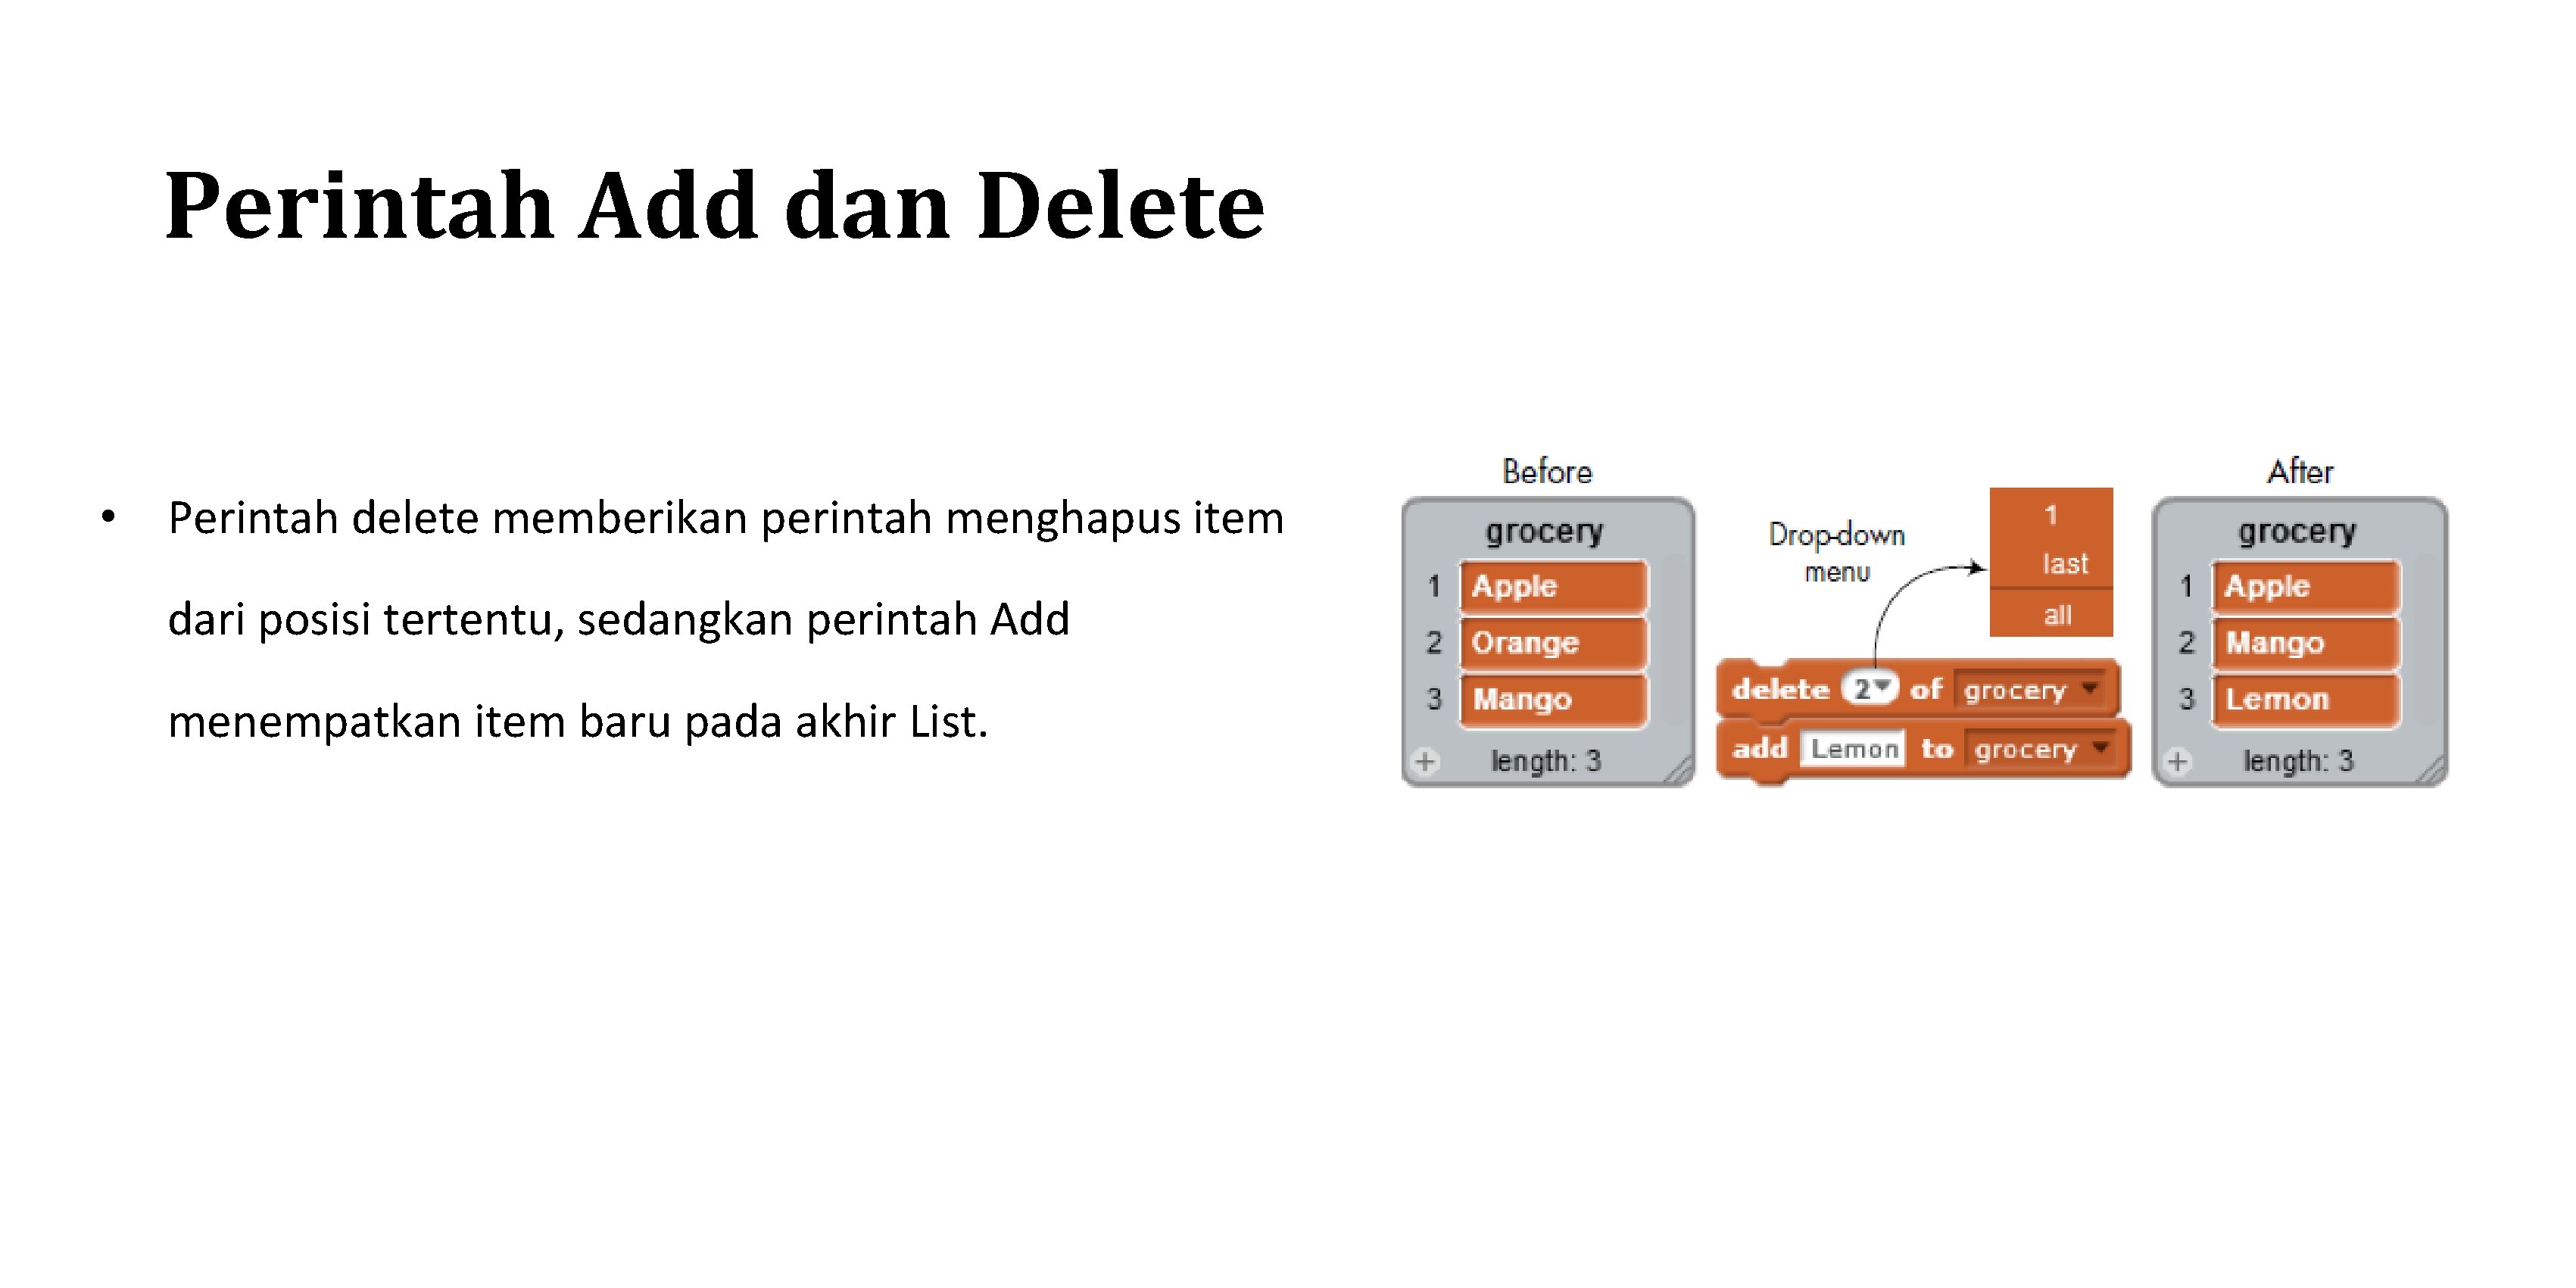 Perintah Add dan Delete • Perintah delete memberikan perintah menghapus item dari posisi tertentu,